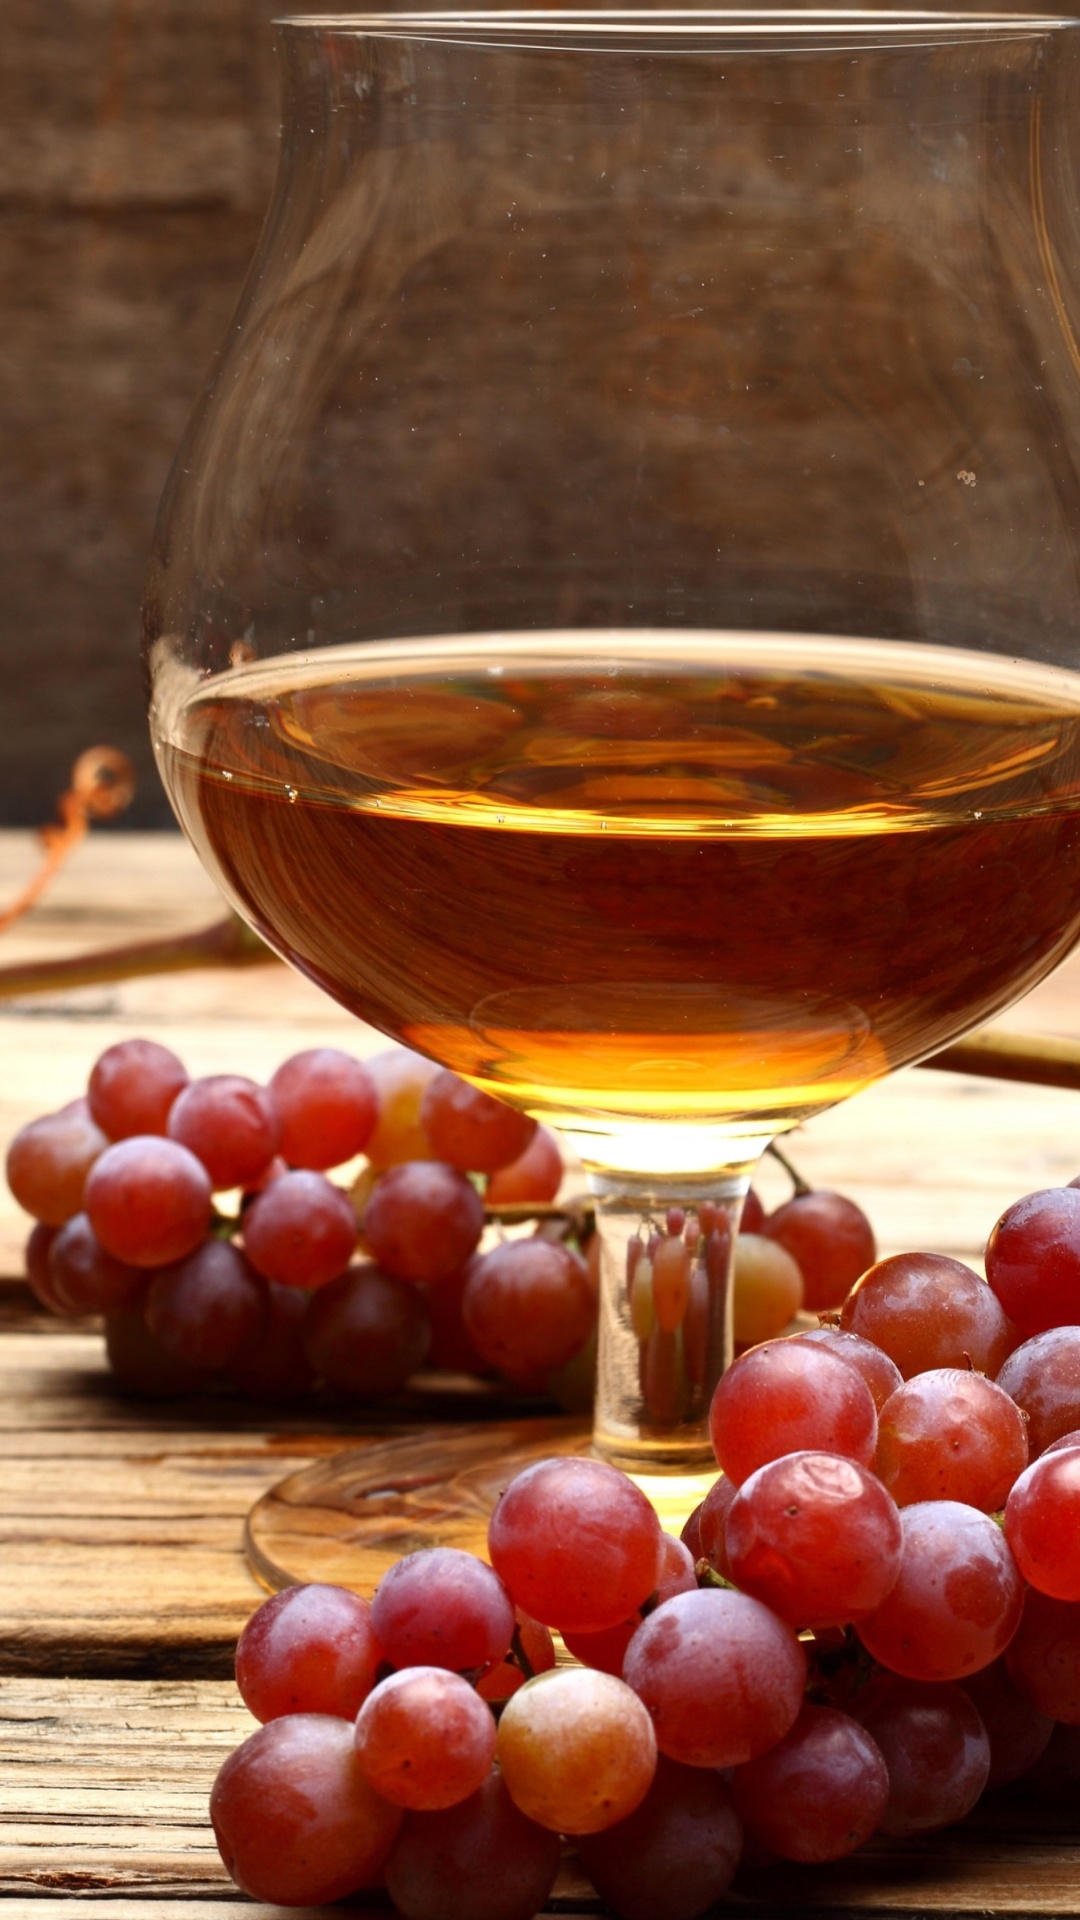 Cognac and grapes wallpaper 1080x1920